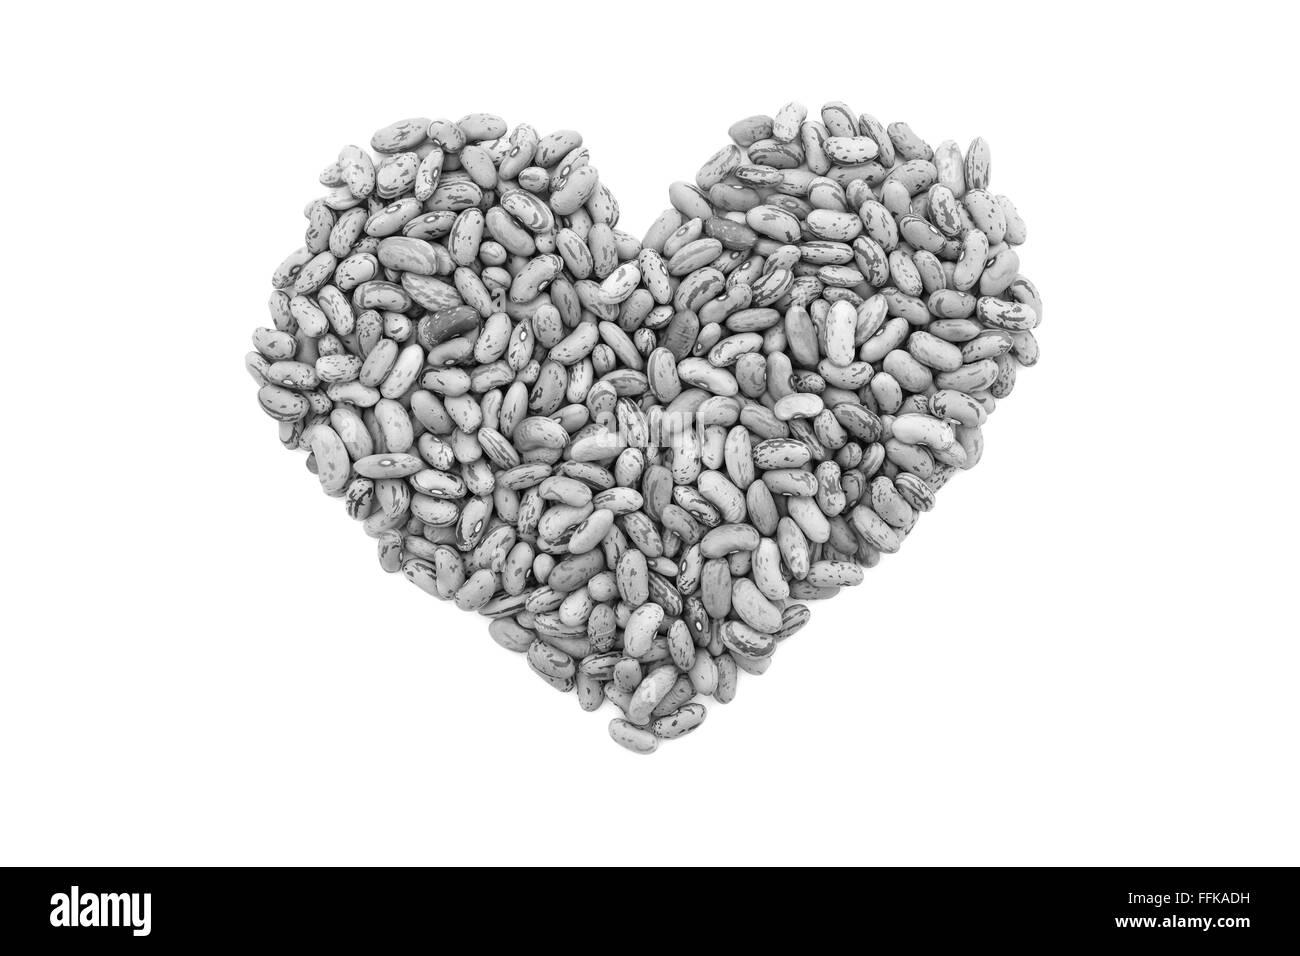 Canneberge, ou des haricots borlotti en forme de coeur, isolé sur fond blanc - traitement monochrome Banque D'Images